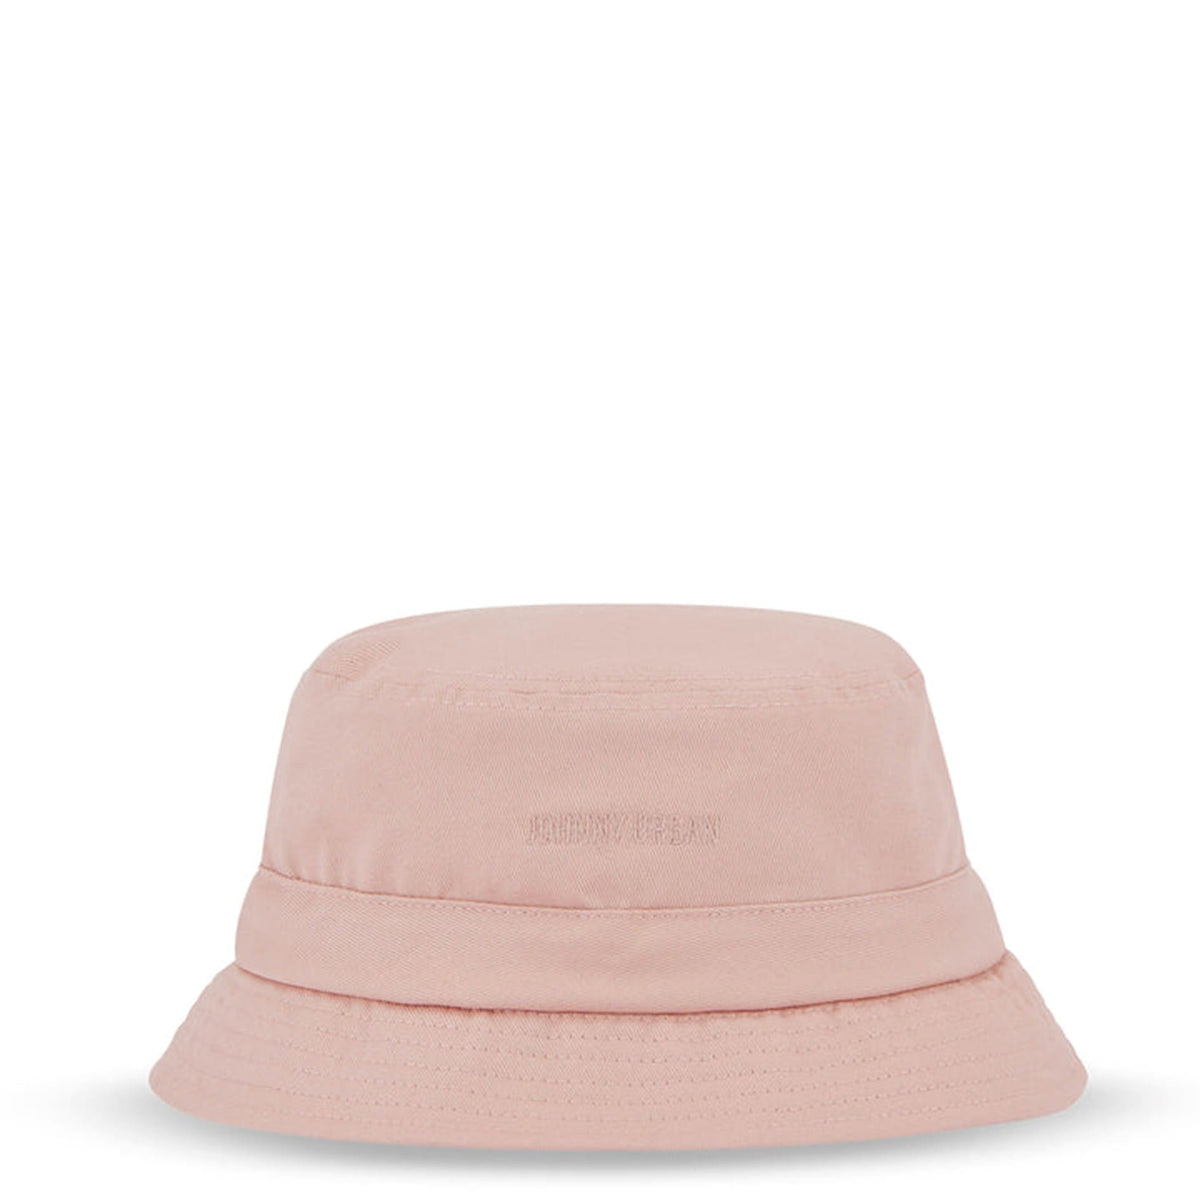 Fischer Hut / Bucket Hat, "Gill" rosa, Johnny Urban